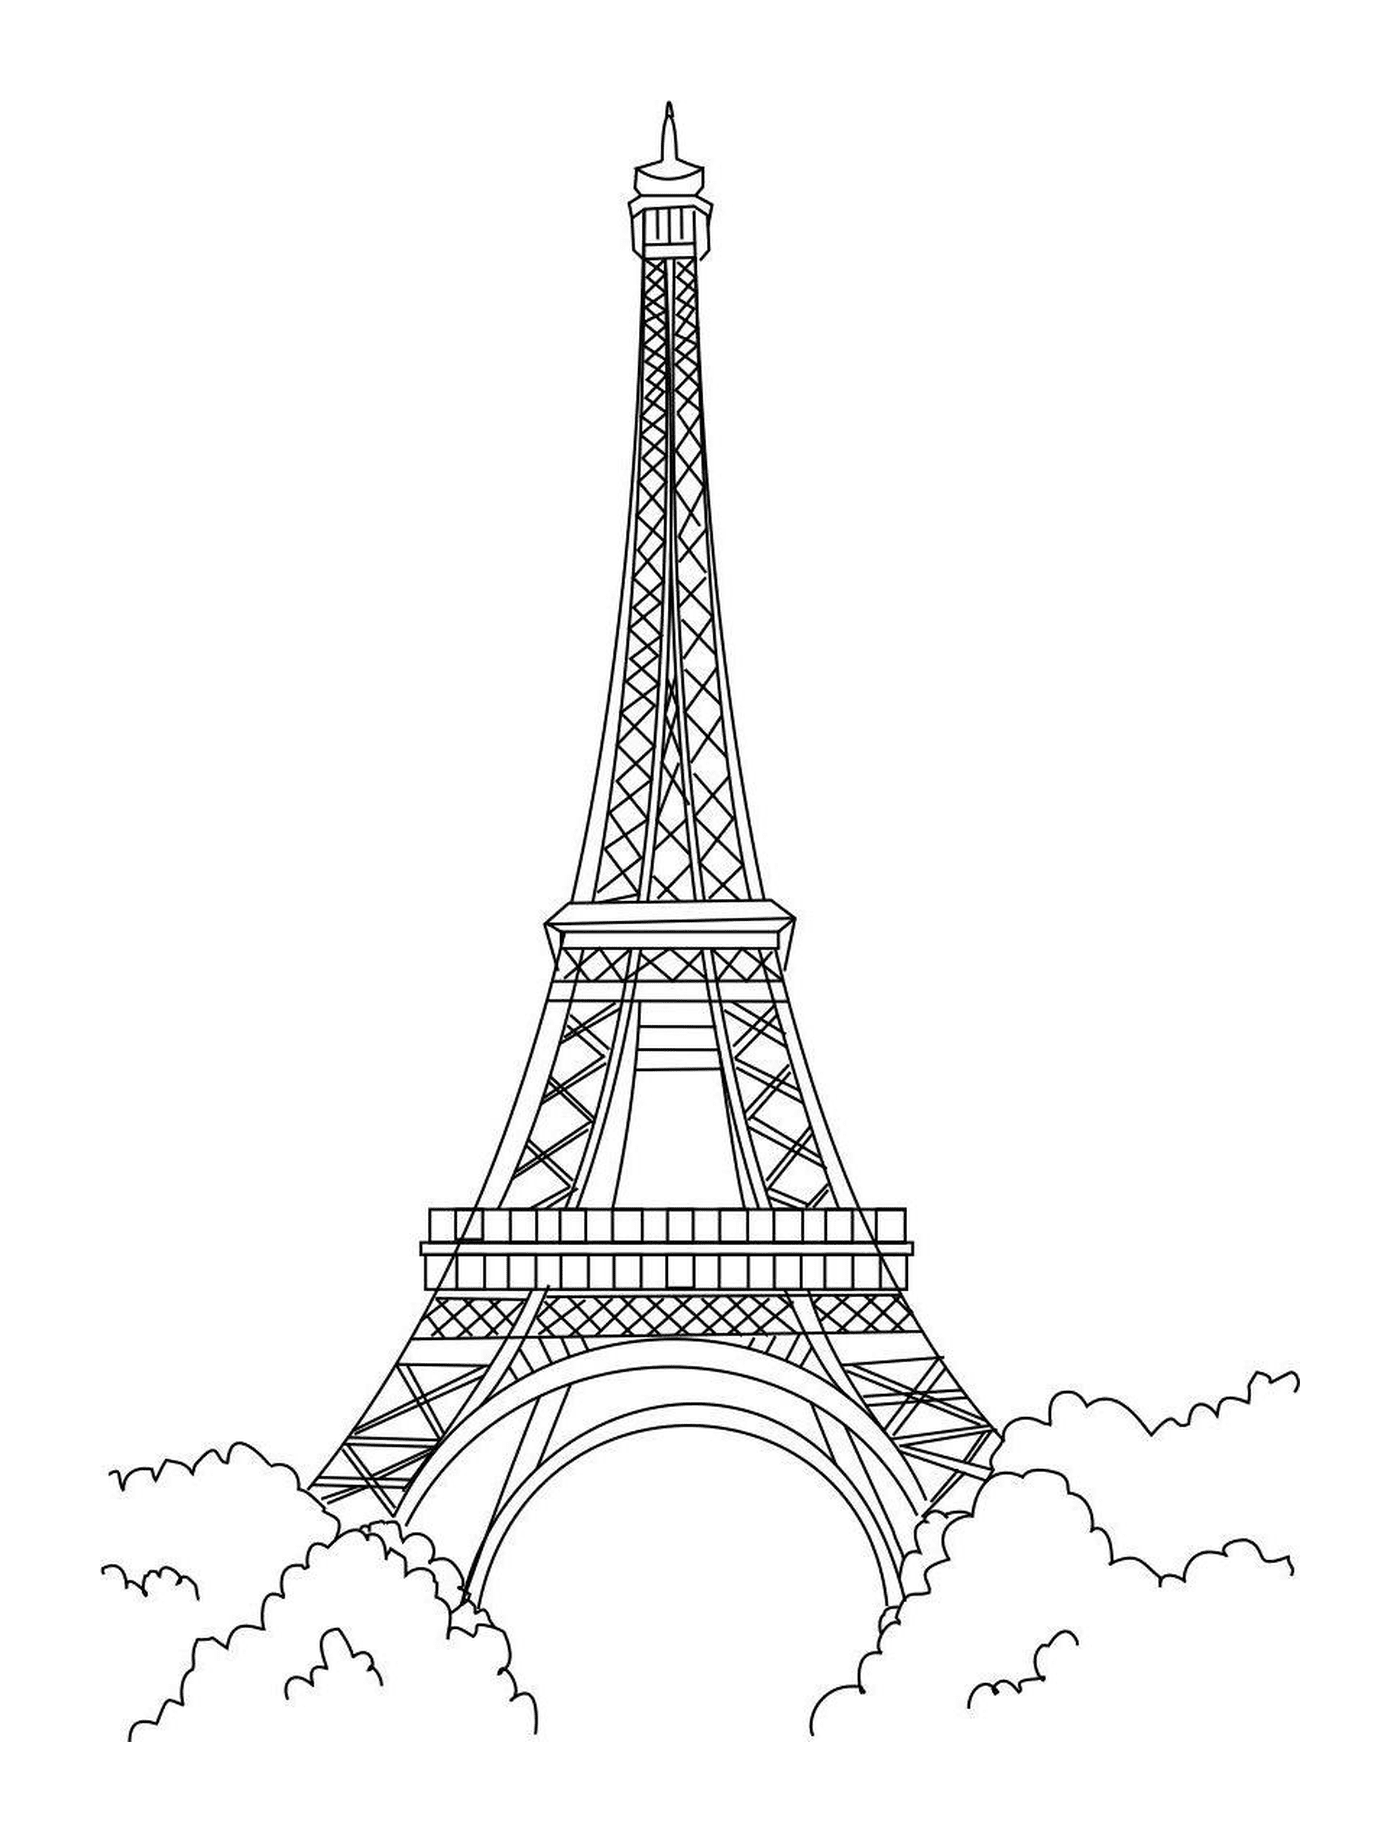  埃菲尔铁塔、巴黎纪念碑 